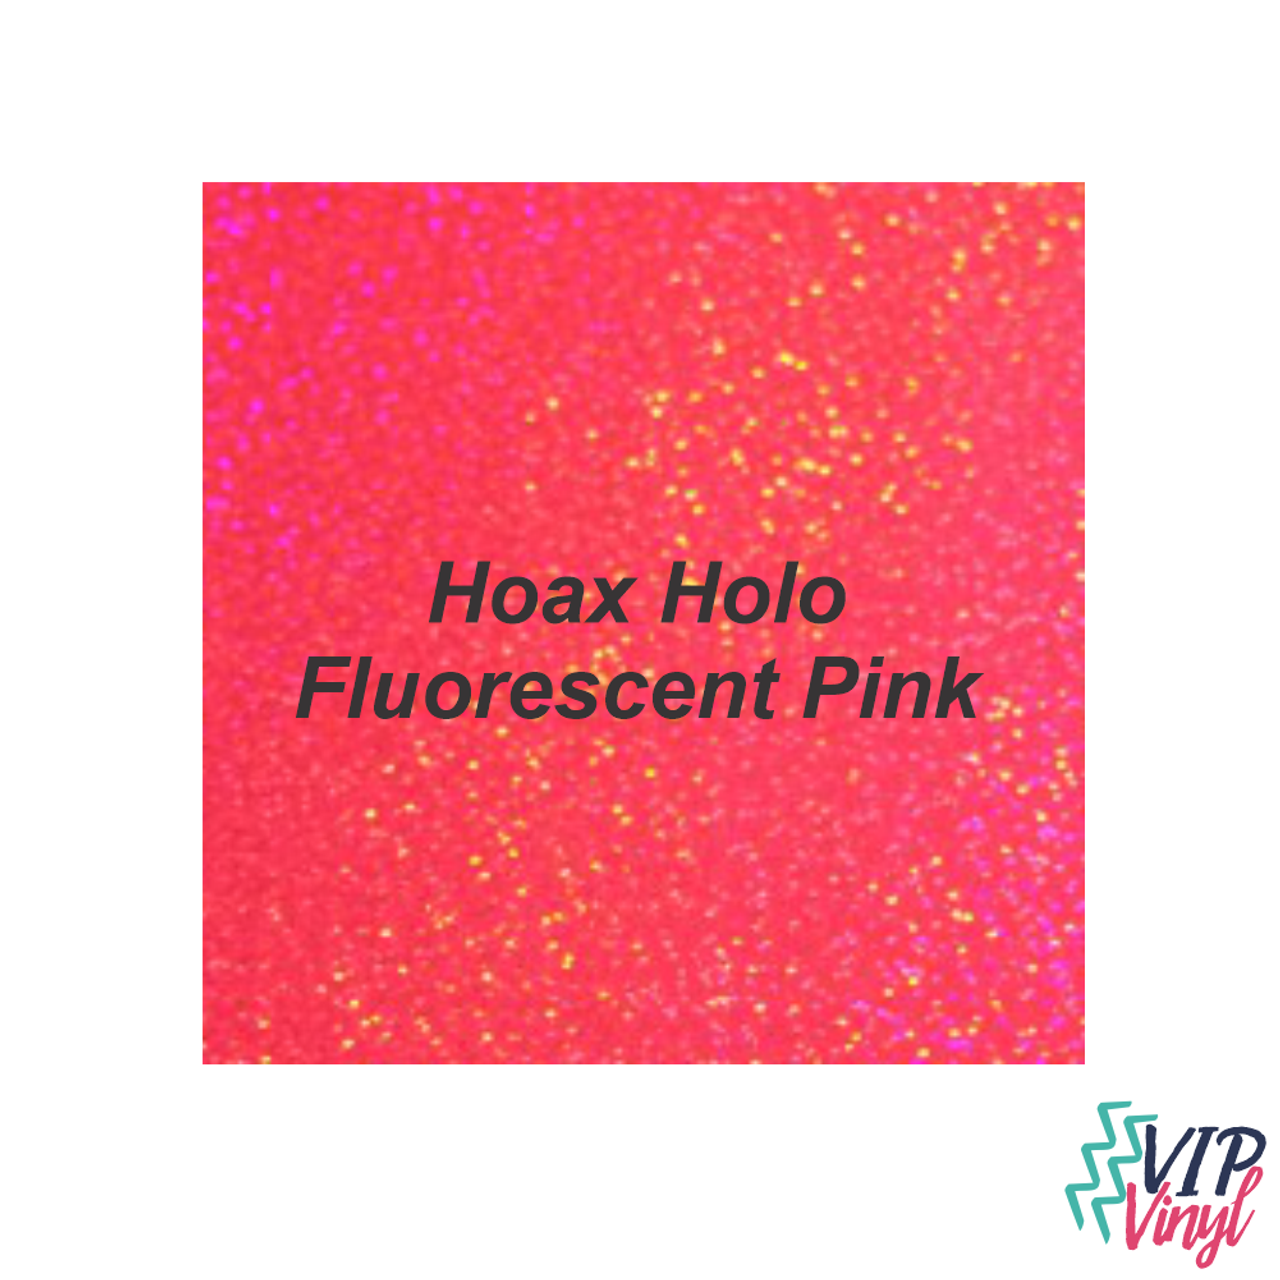 12 x 12 StarCraft Magic - Hoax Holo Fluorescent Pink